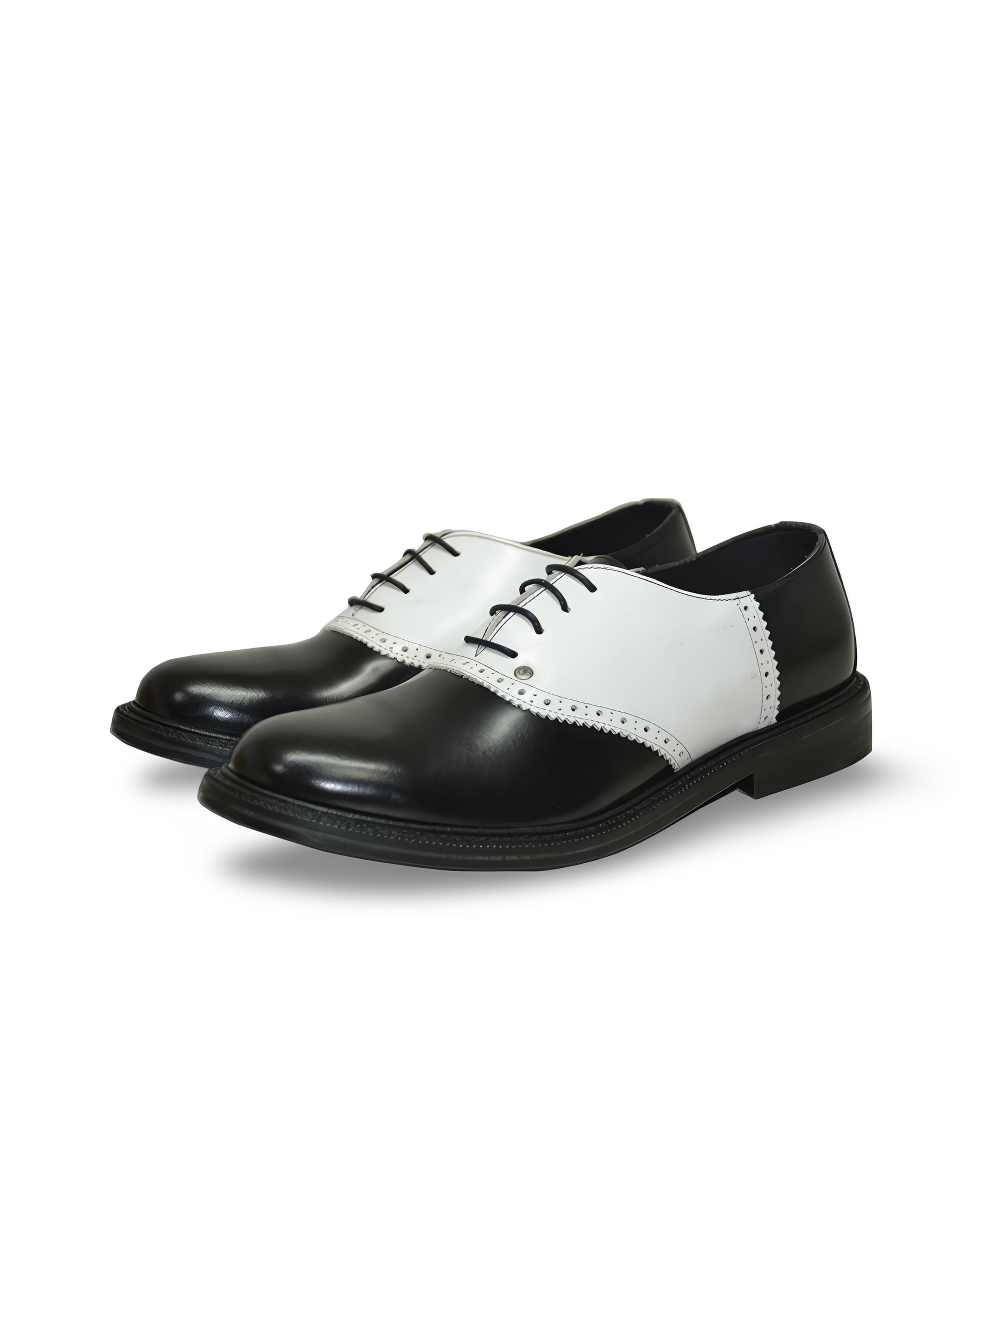 Zapatos Oxford de Piel Estilo Rockabilly Negros para Hombre